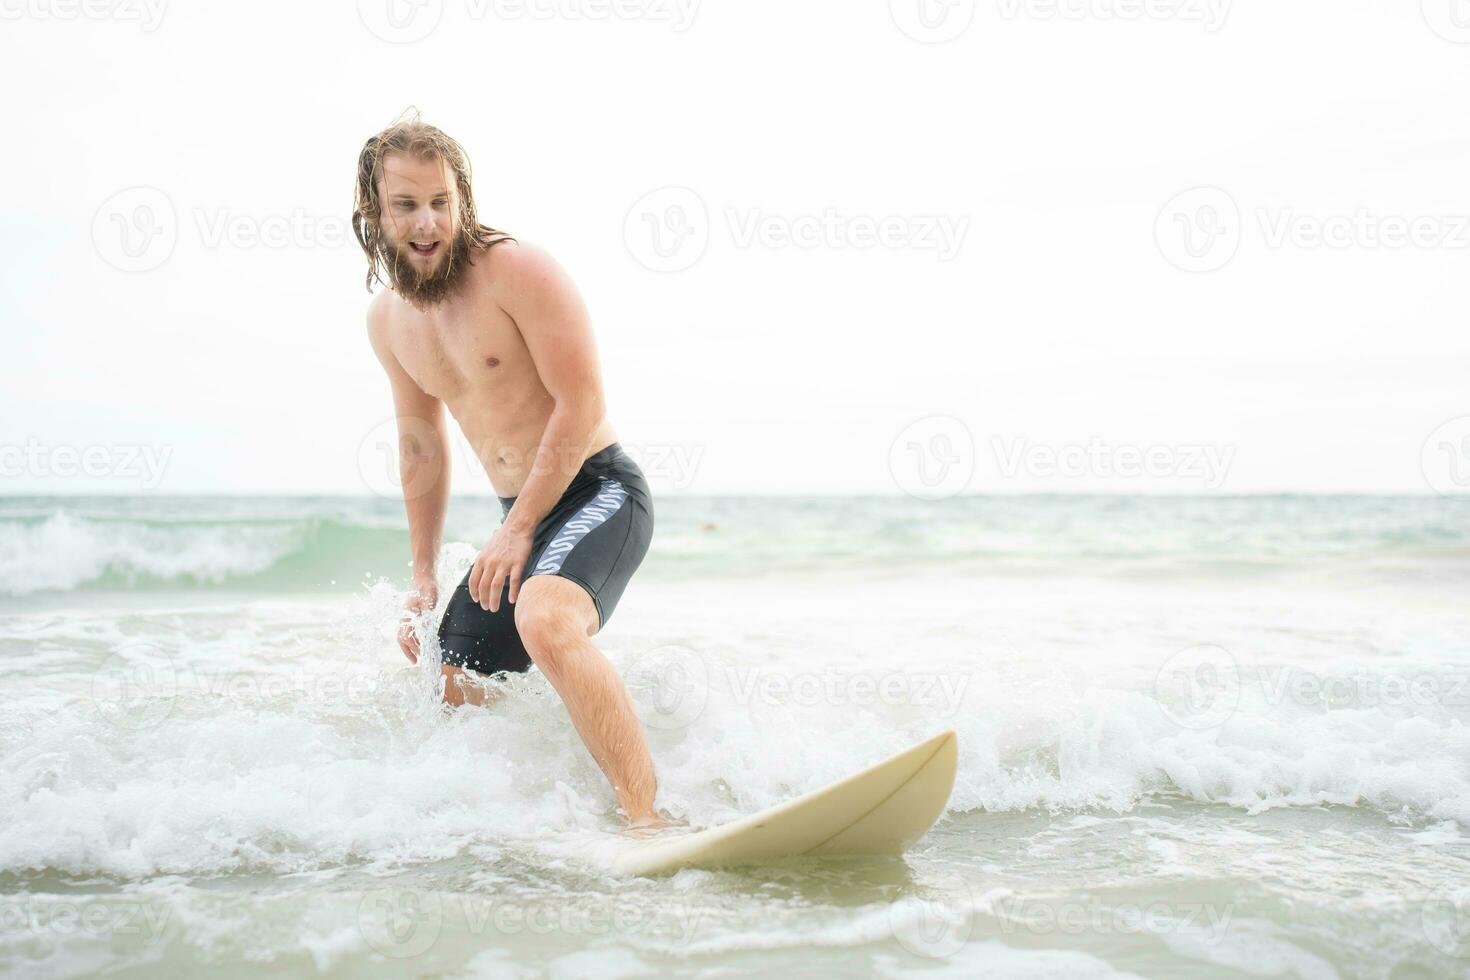 jovem homem surfar em a de praia tendo Diversão e balanceamento em a prancha de surfe foto